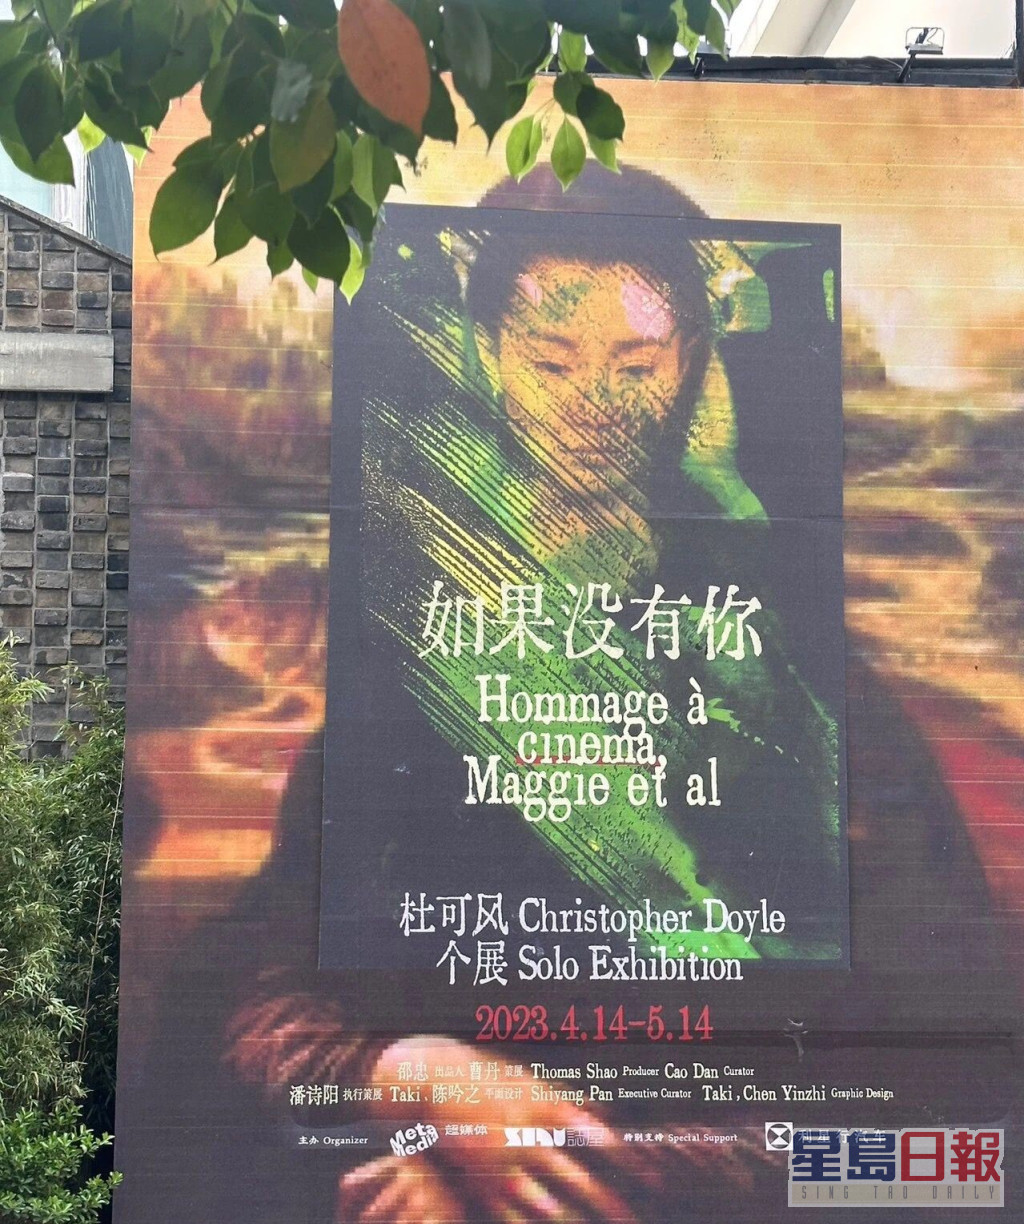 杜可风自上月14日至本月15日在上海举行个人展览《如果没有你》。